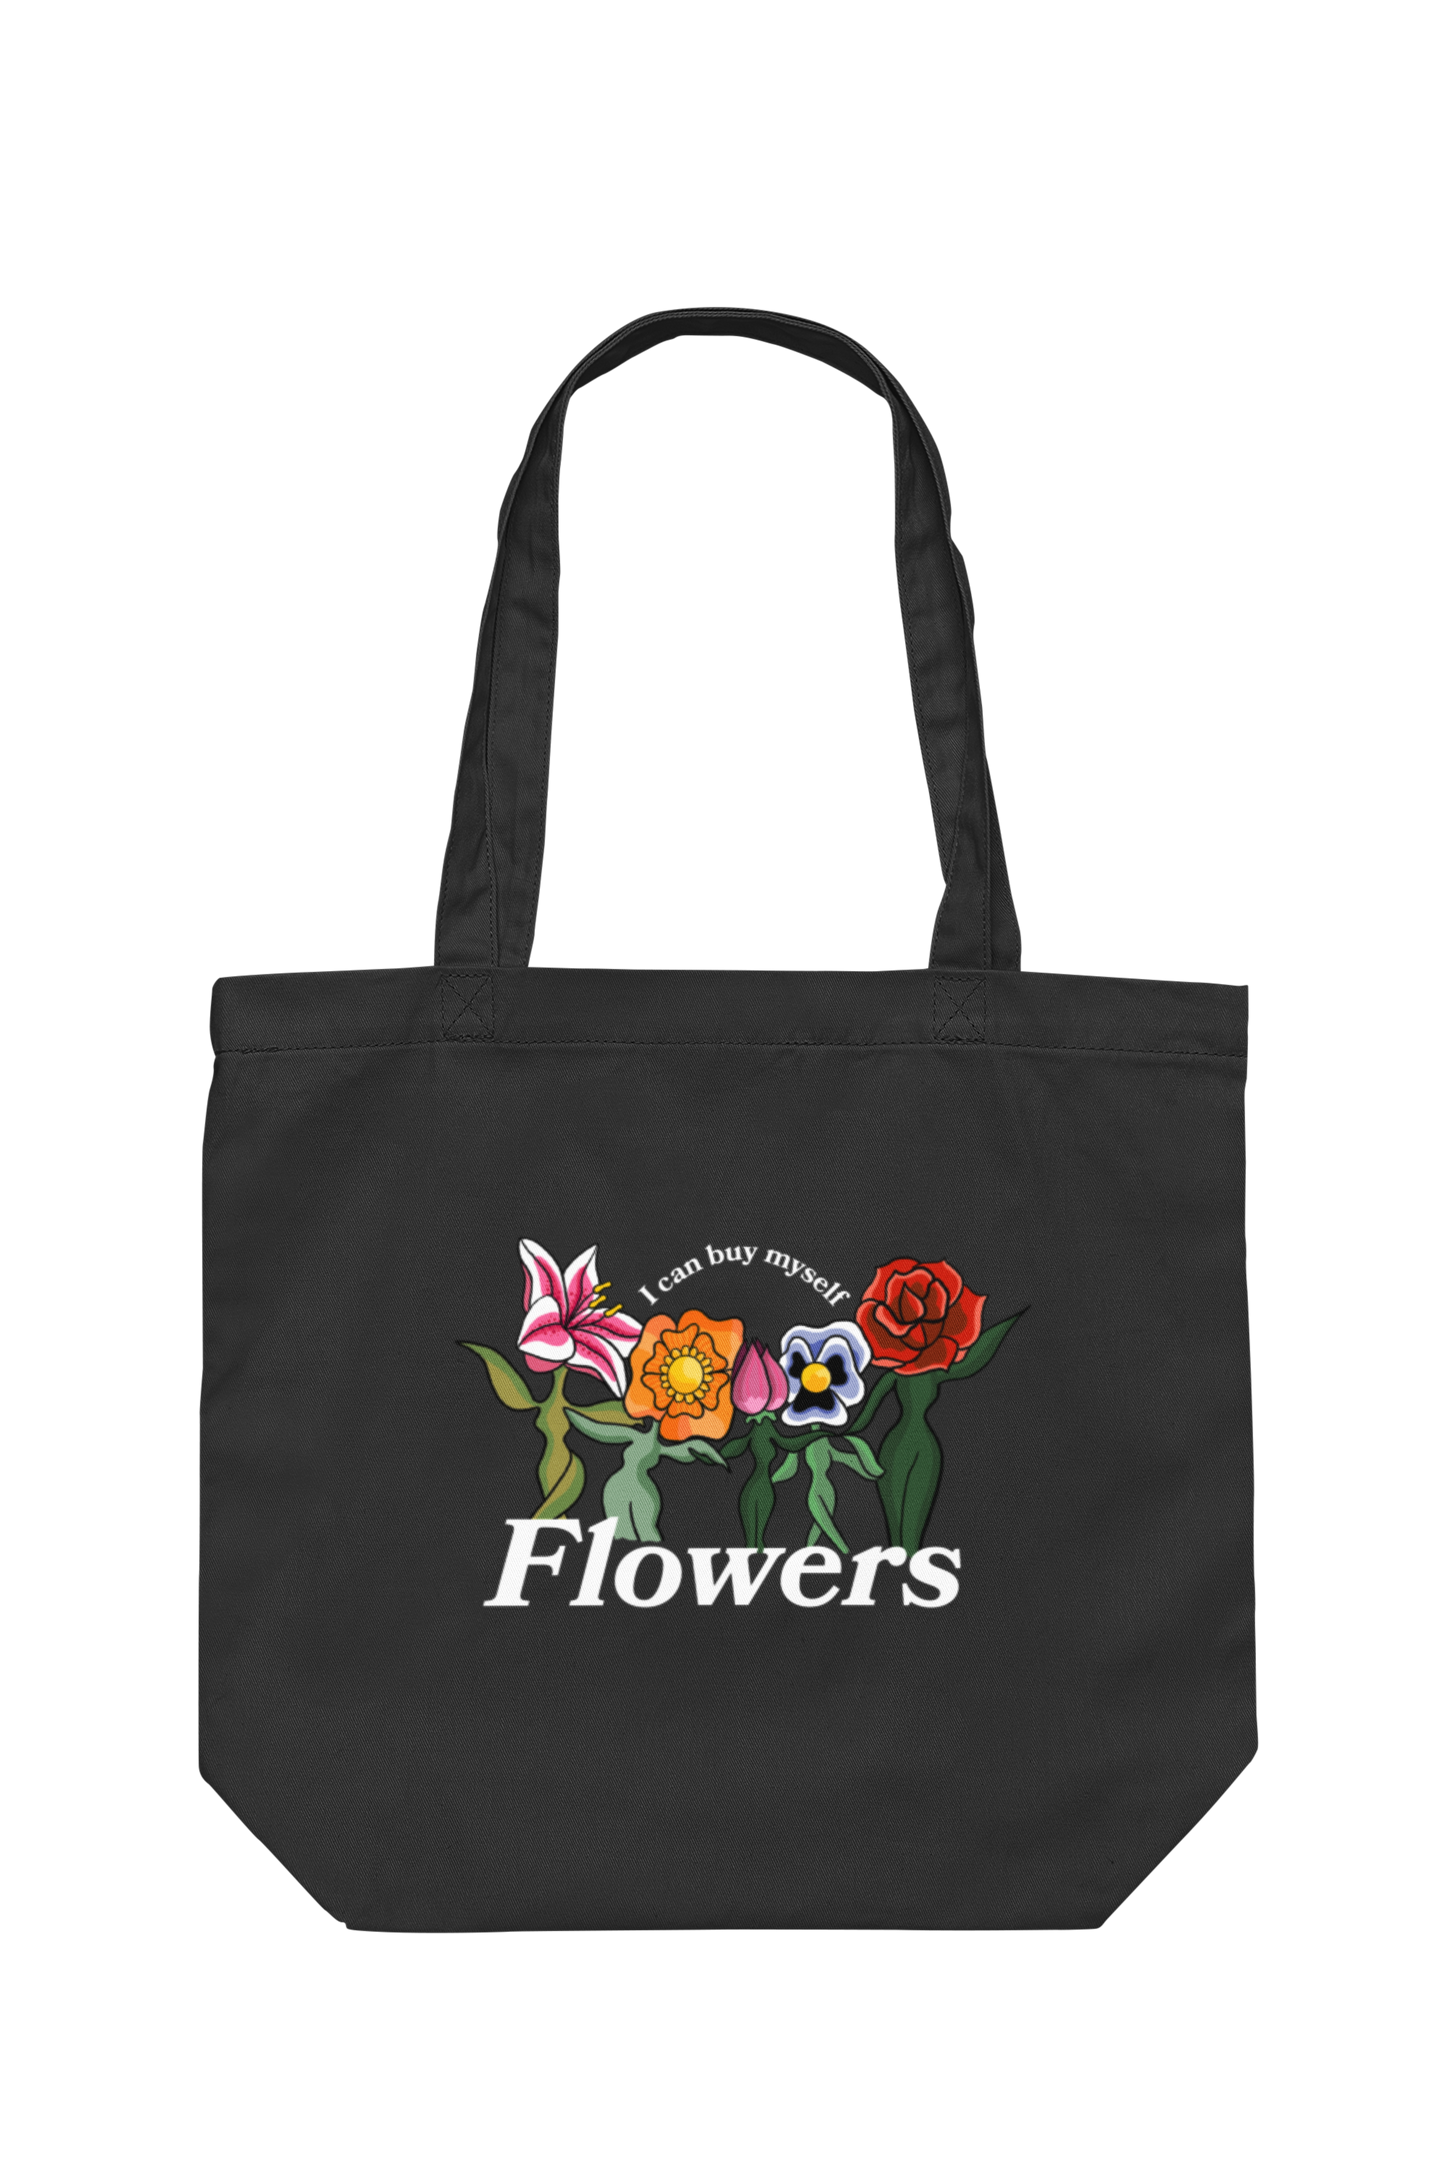 Miley Cyrus - Flowers Tote Bag